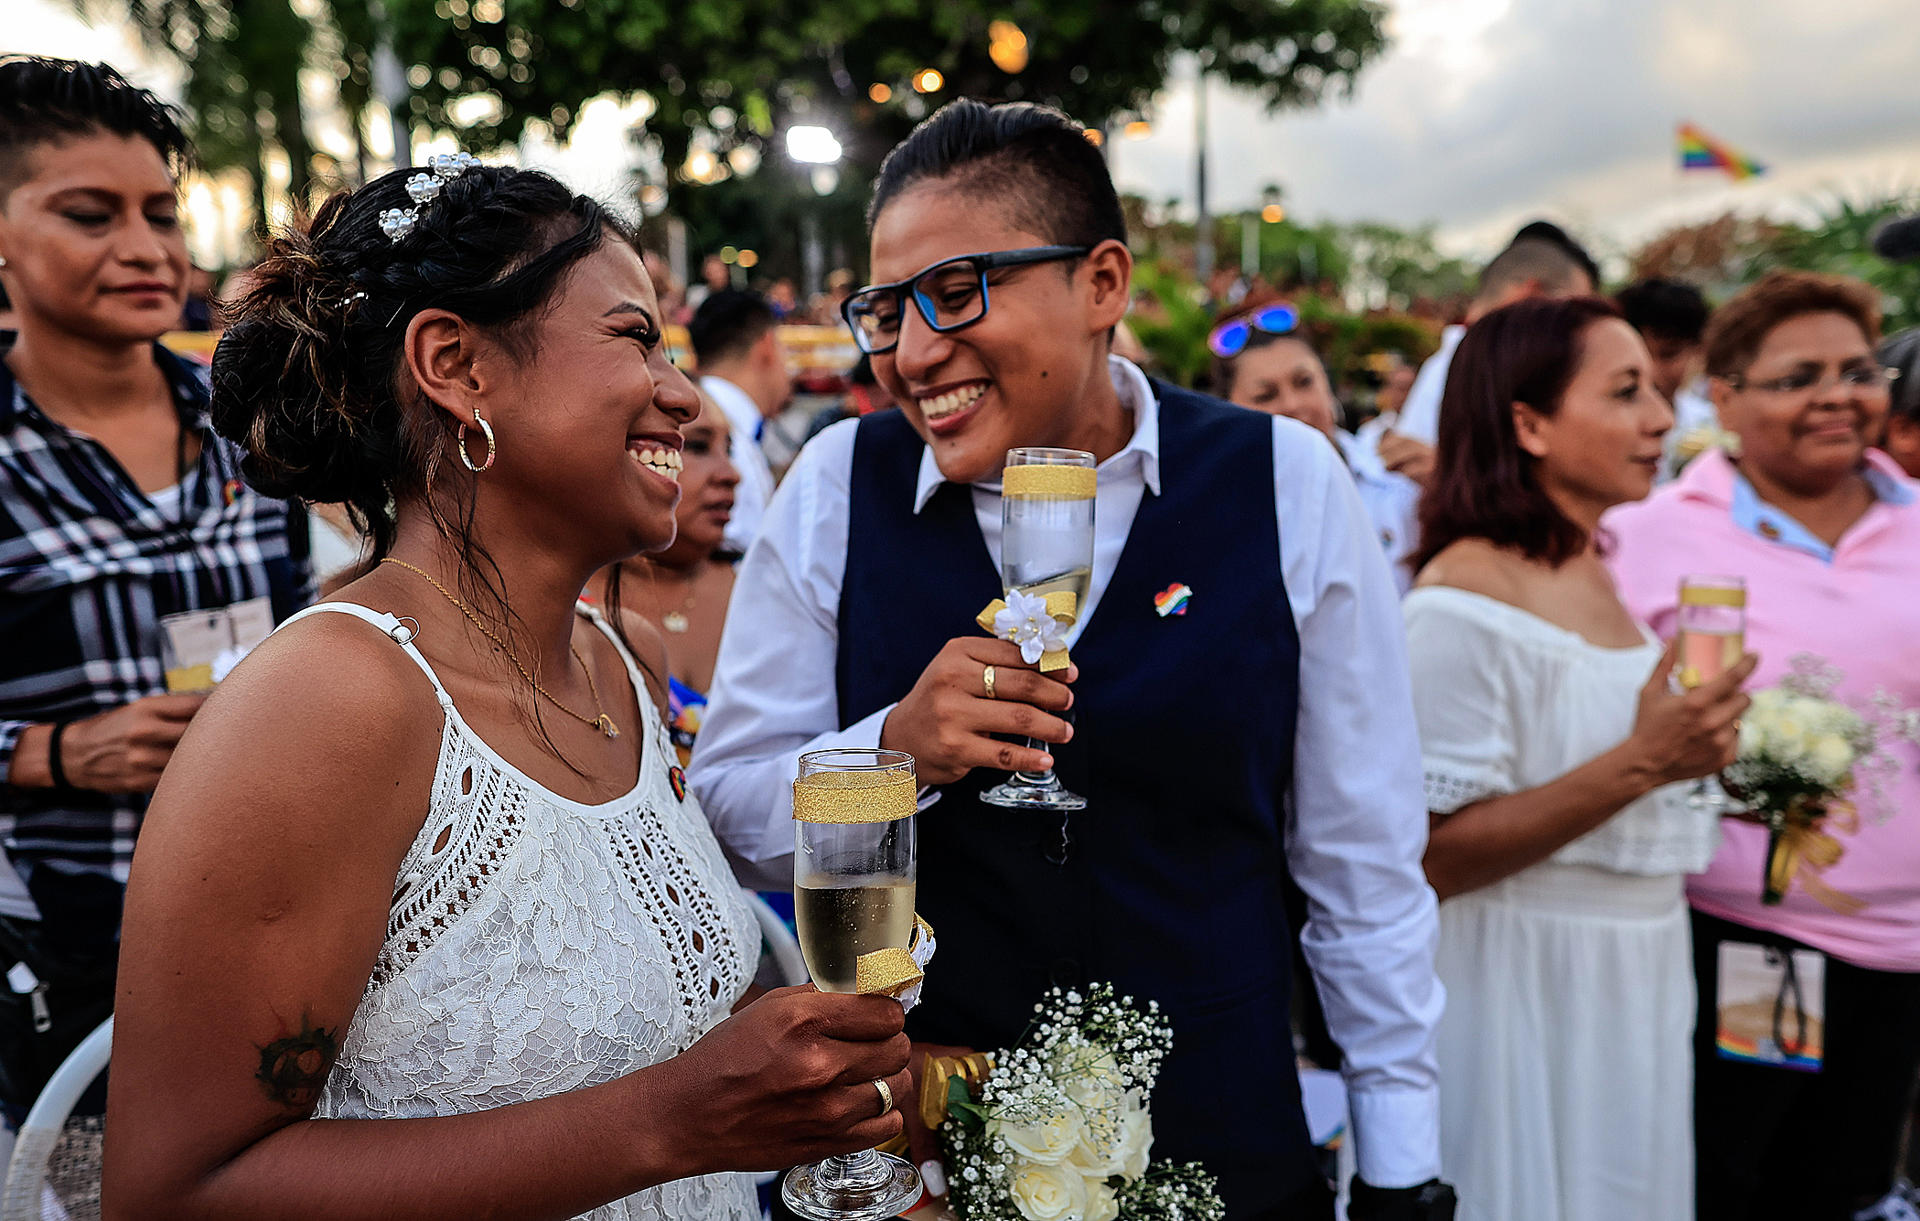 Parejas participaron en una unión matrimonial en el balneario de Acapulco, estado de Guerrero (México). Imagen de archivo. EFE/David Guzmán.
